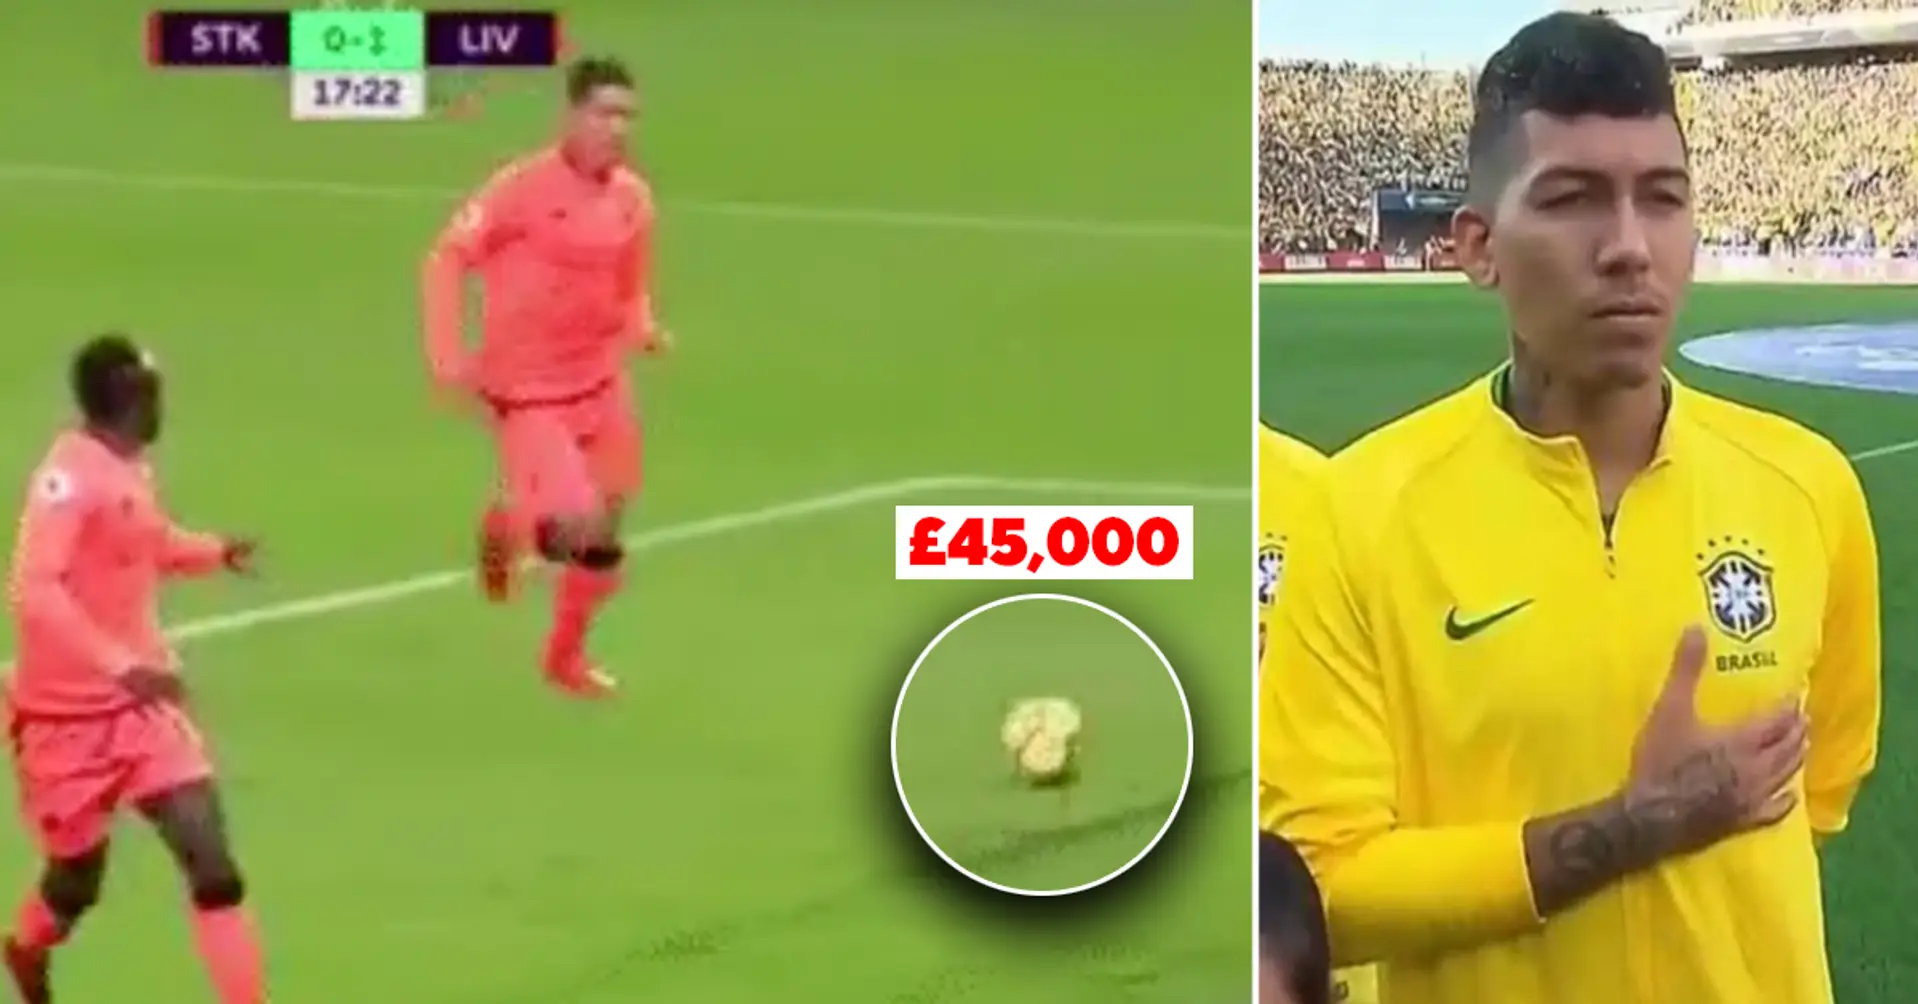 Révélé: Pourquoi Roberto Firmino a perdu 45 000 £ en une seconde lors du match de Liverpool